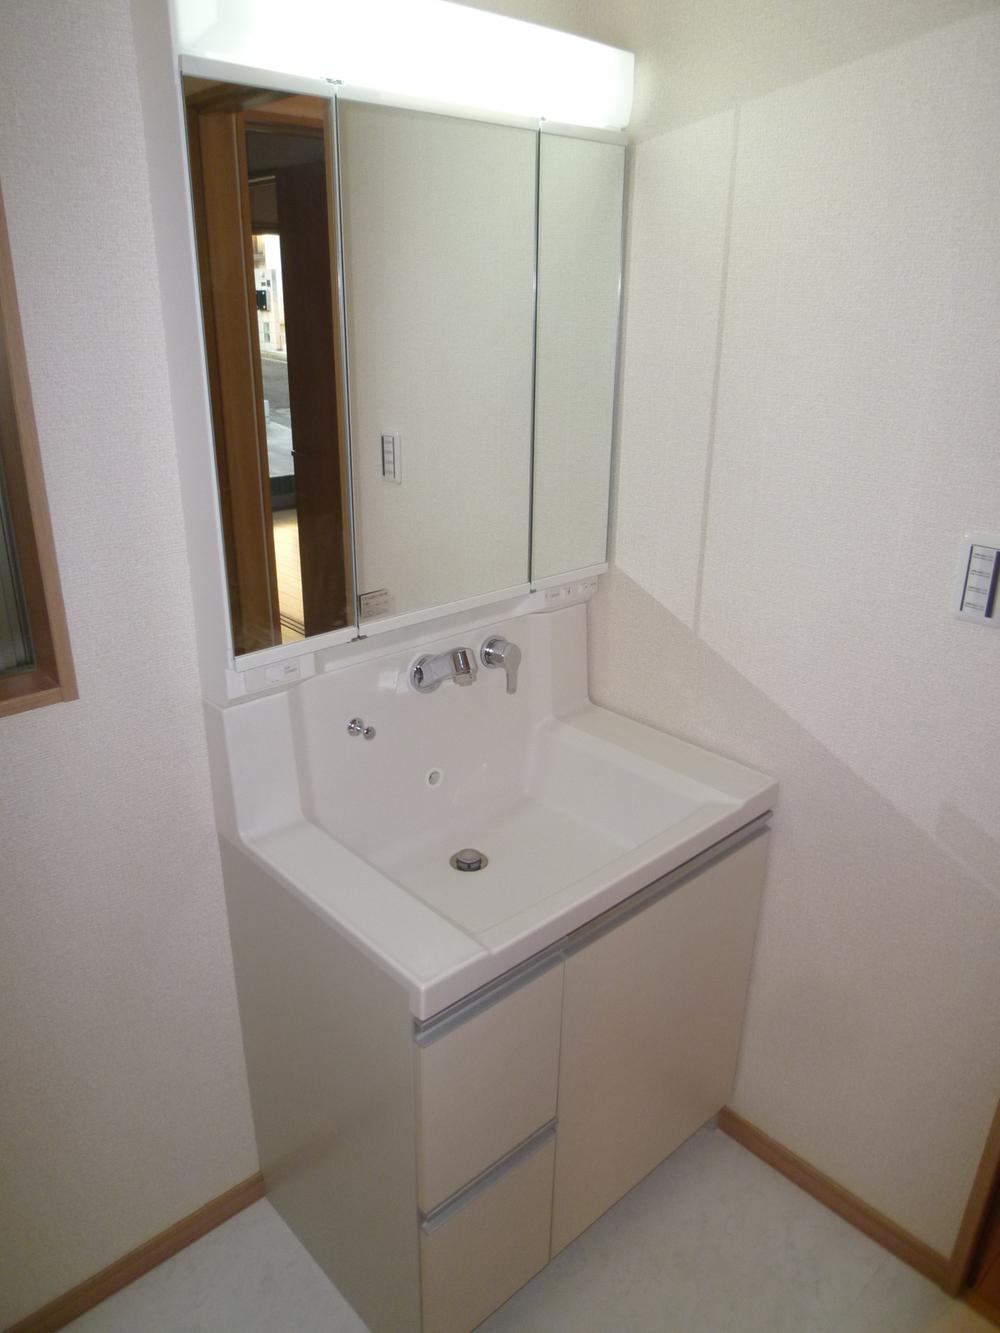 Wash basin, toilet. Indoor (November 5, 2013) Shooting